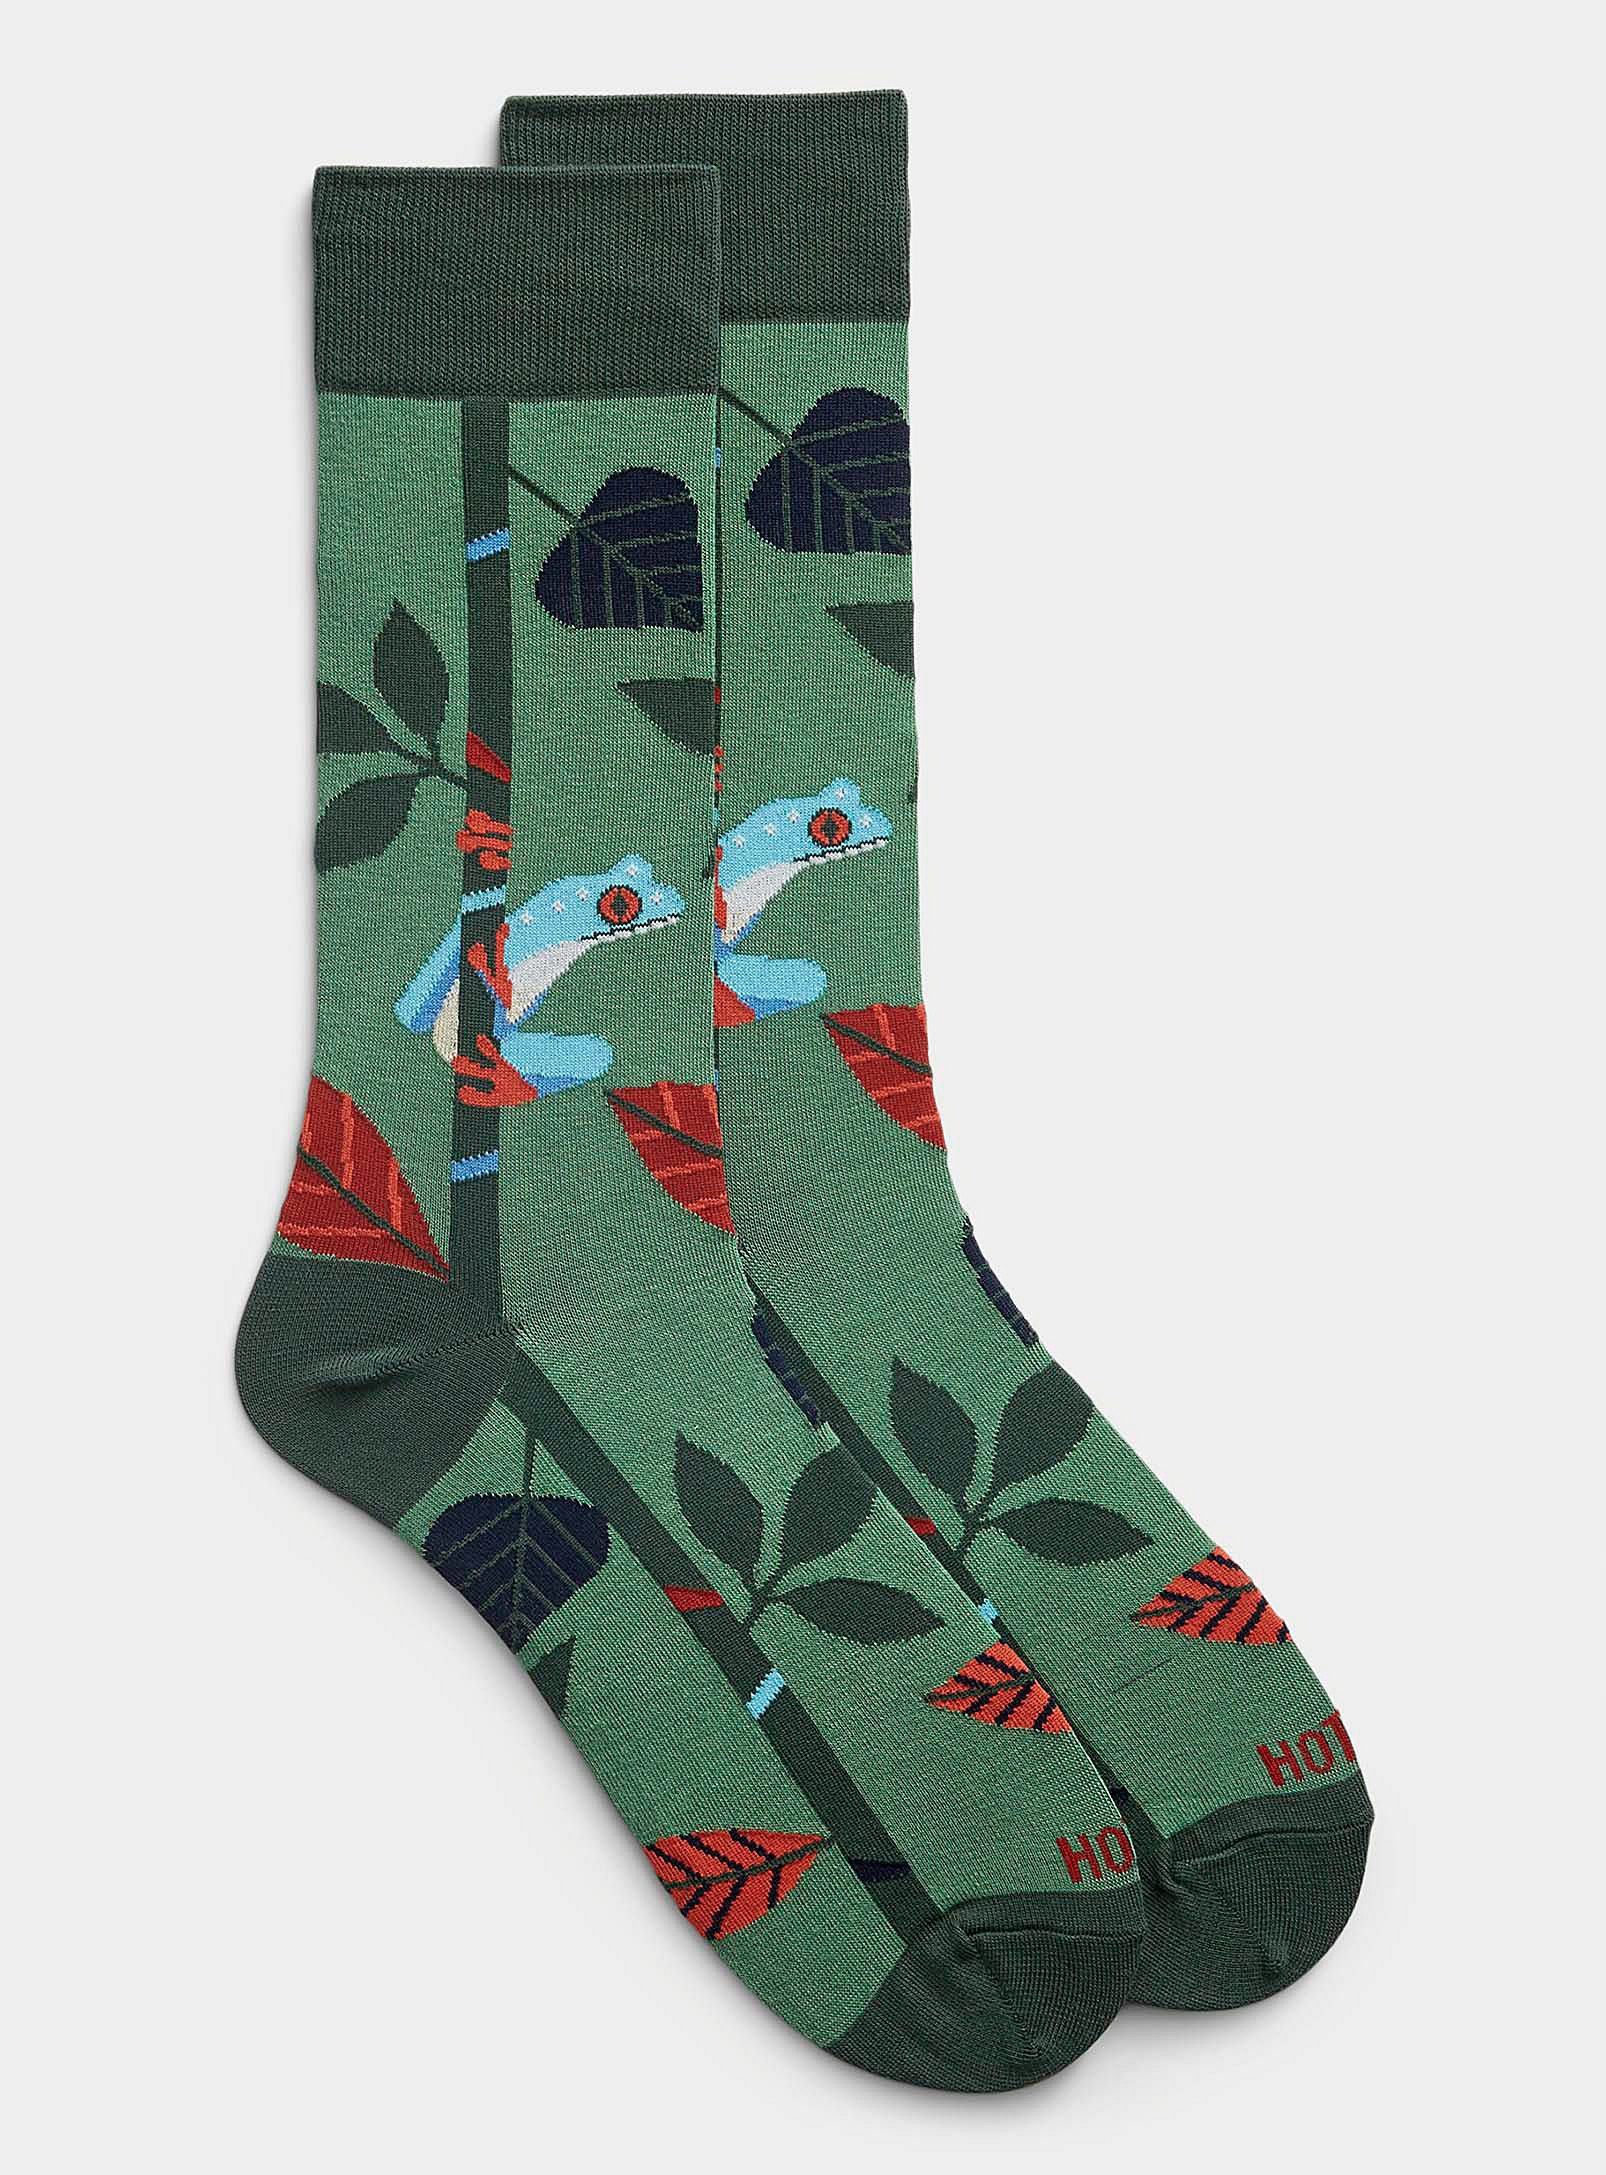 Hot Sox - Men's Tropical tree frog sock